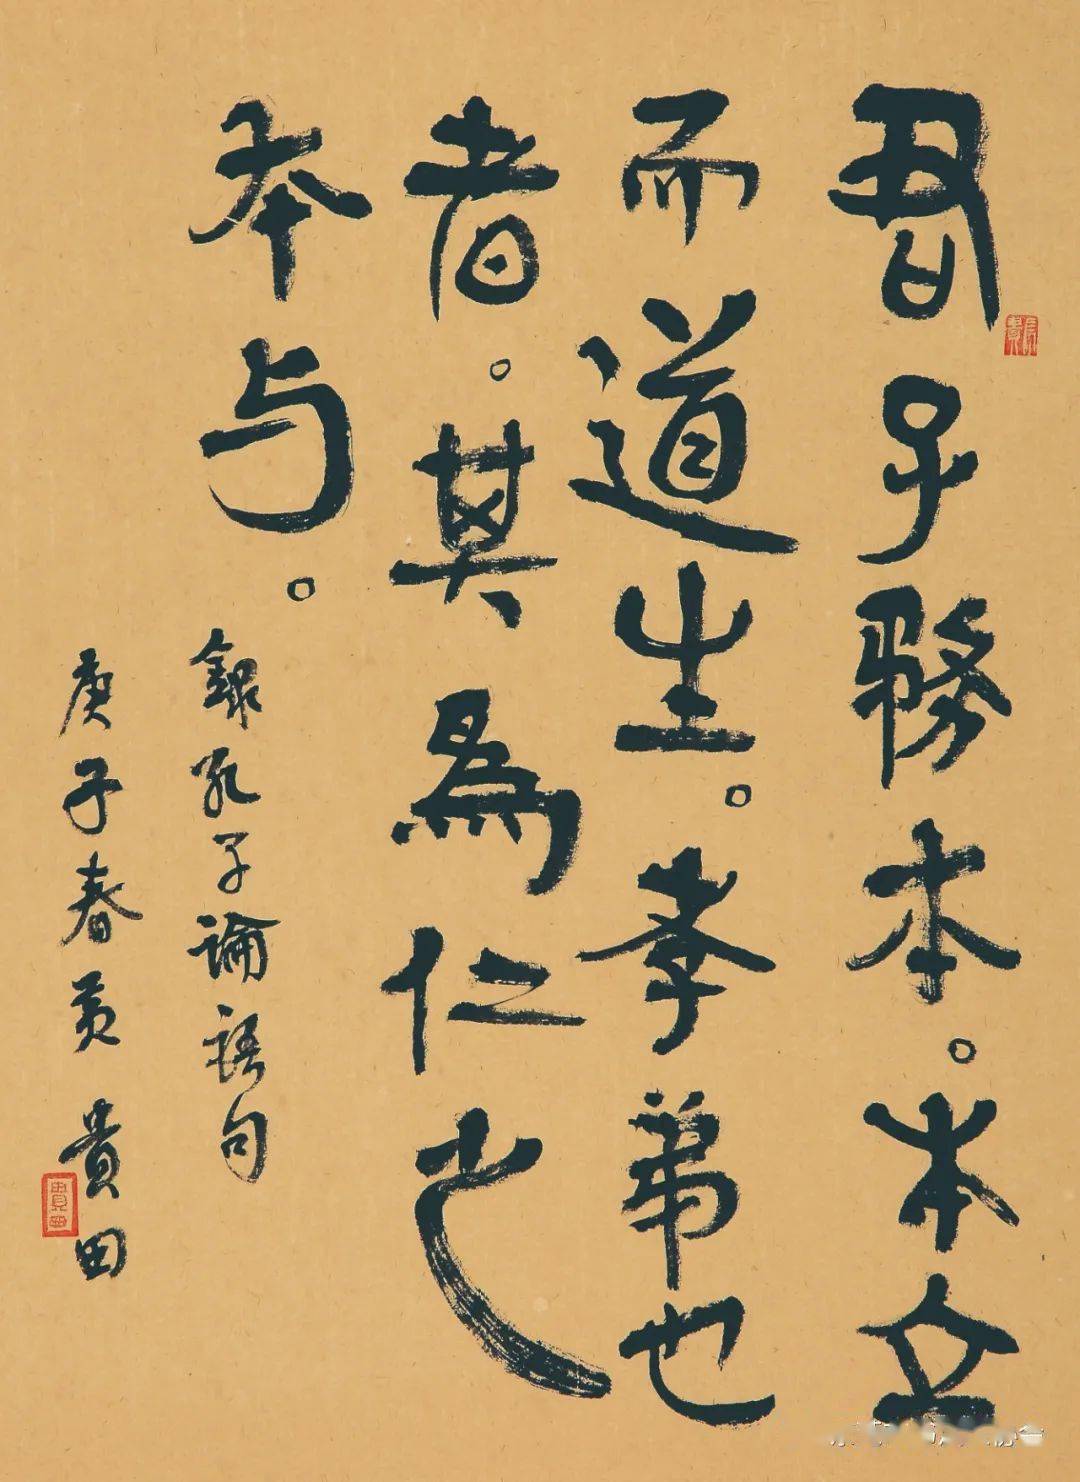 展览预告黄贵田书法作品展将于8月22日在大朗艺术馆开幕